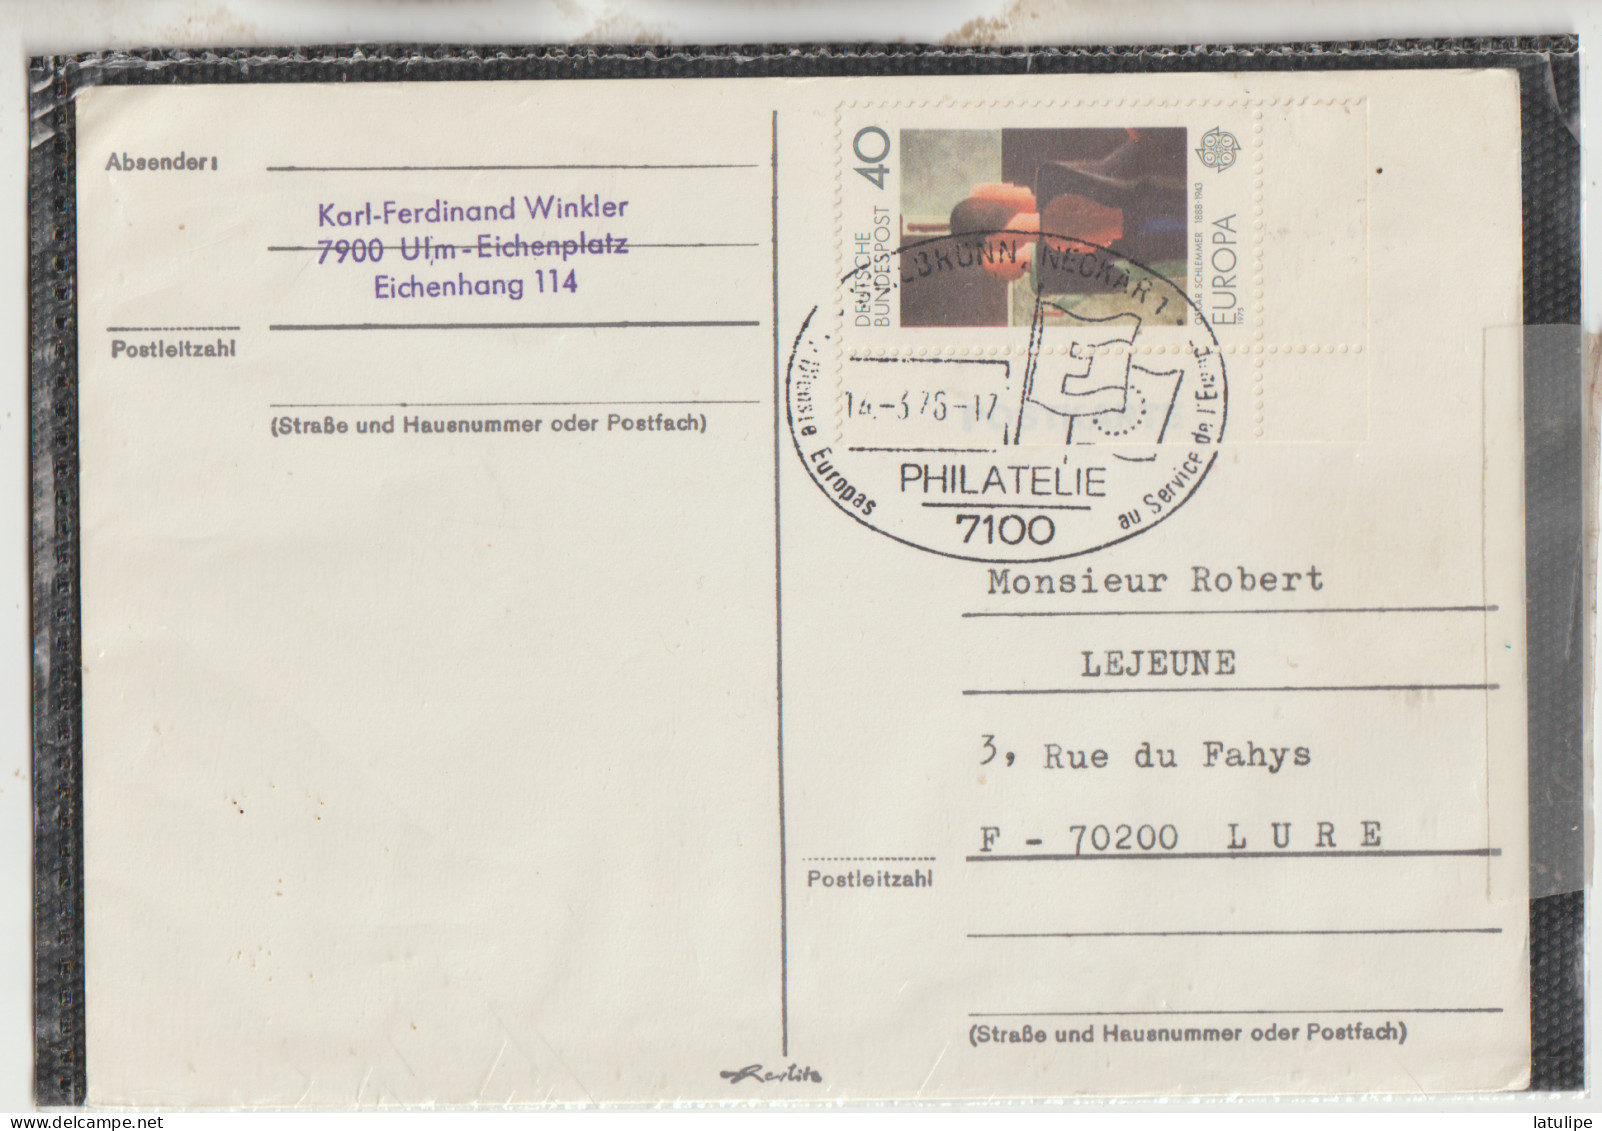 Karl Ferdinand Winkler 7900 Ulm-Eichenplarz Eichenhang 114  Carte  Circulée Timbrée _Adressée A Mr R  Lejeune A Lure 70 - Zu Identifizieren